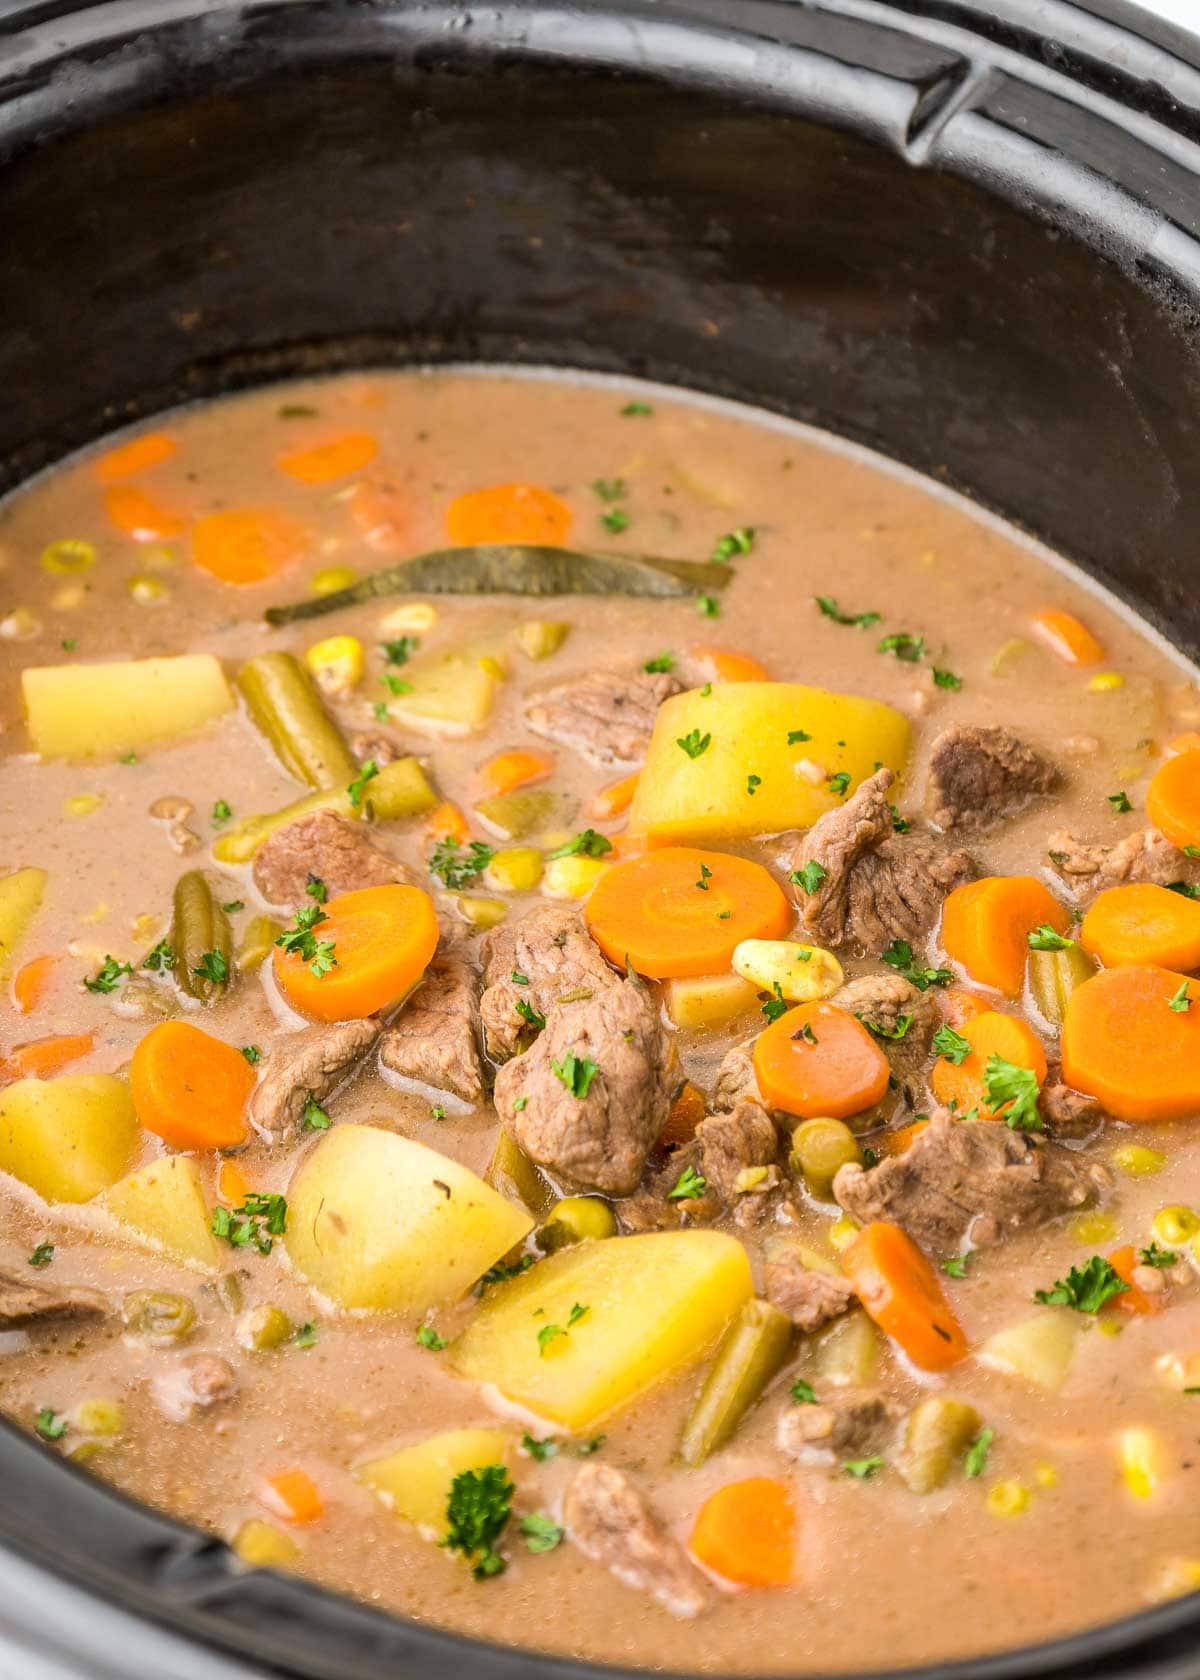 Beef stew crock pot recipe in slow cooker.